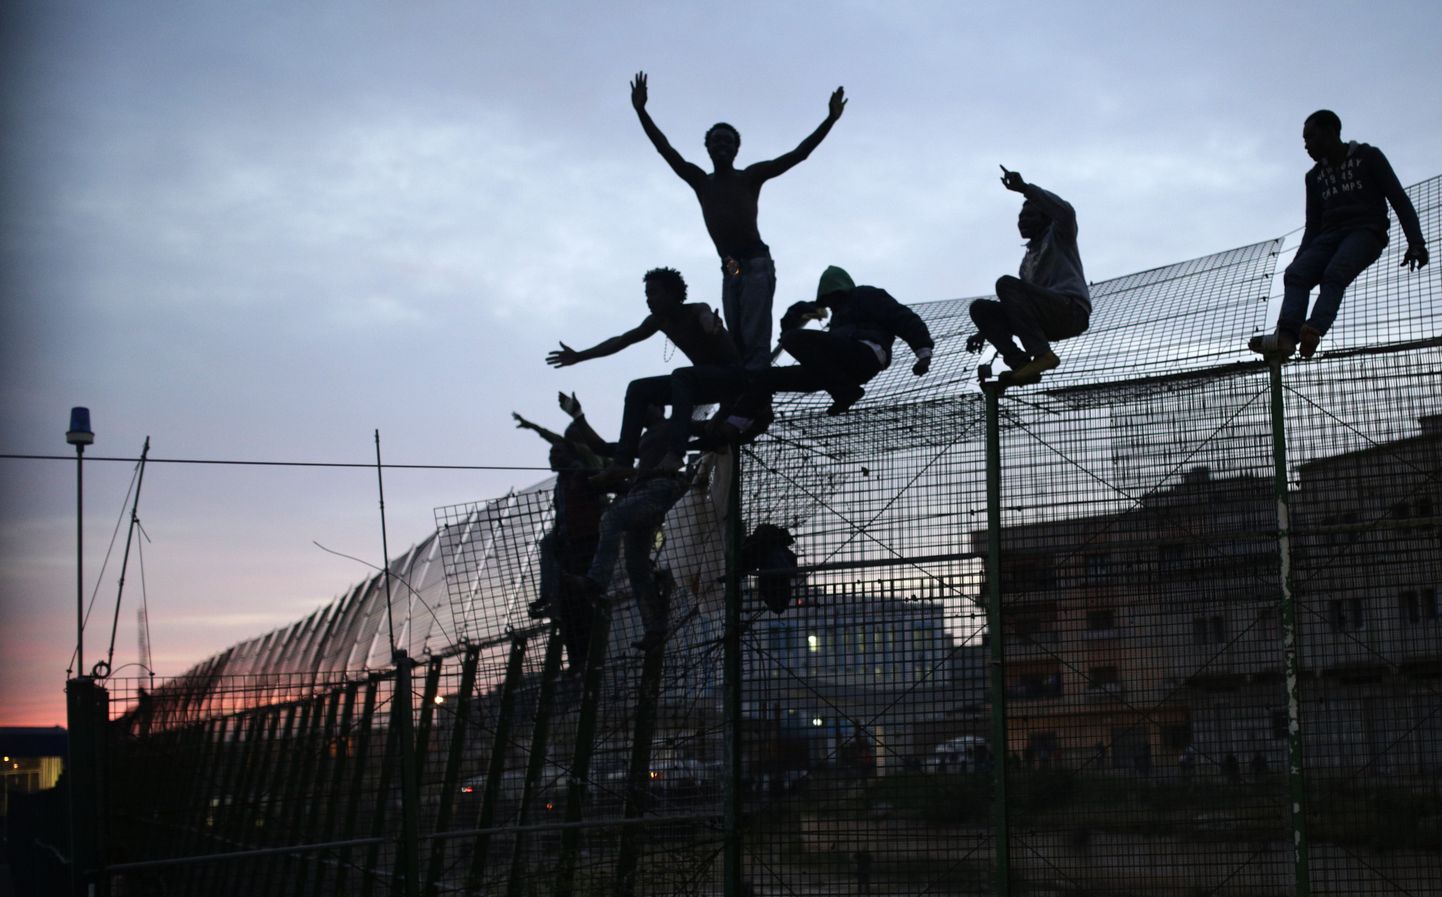 Migrandid Ceuta piiritara ületamas.